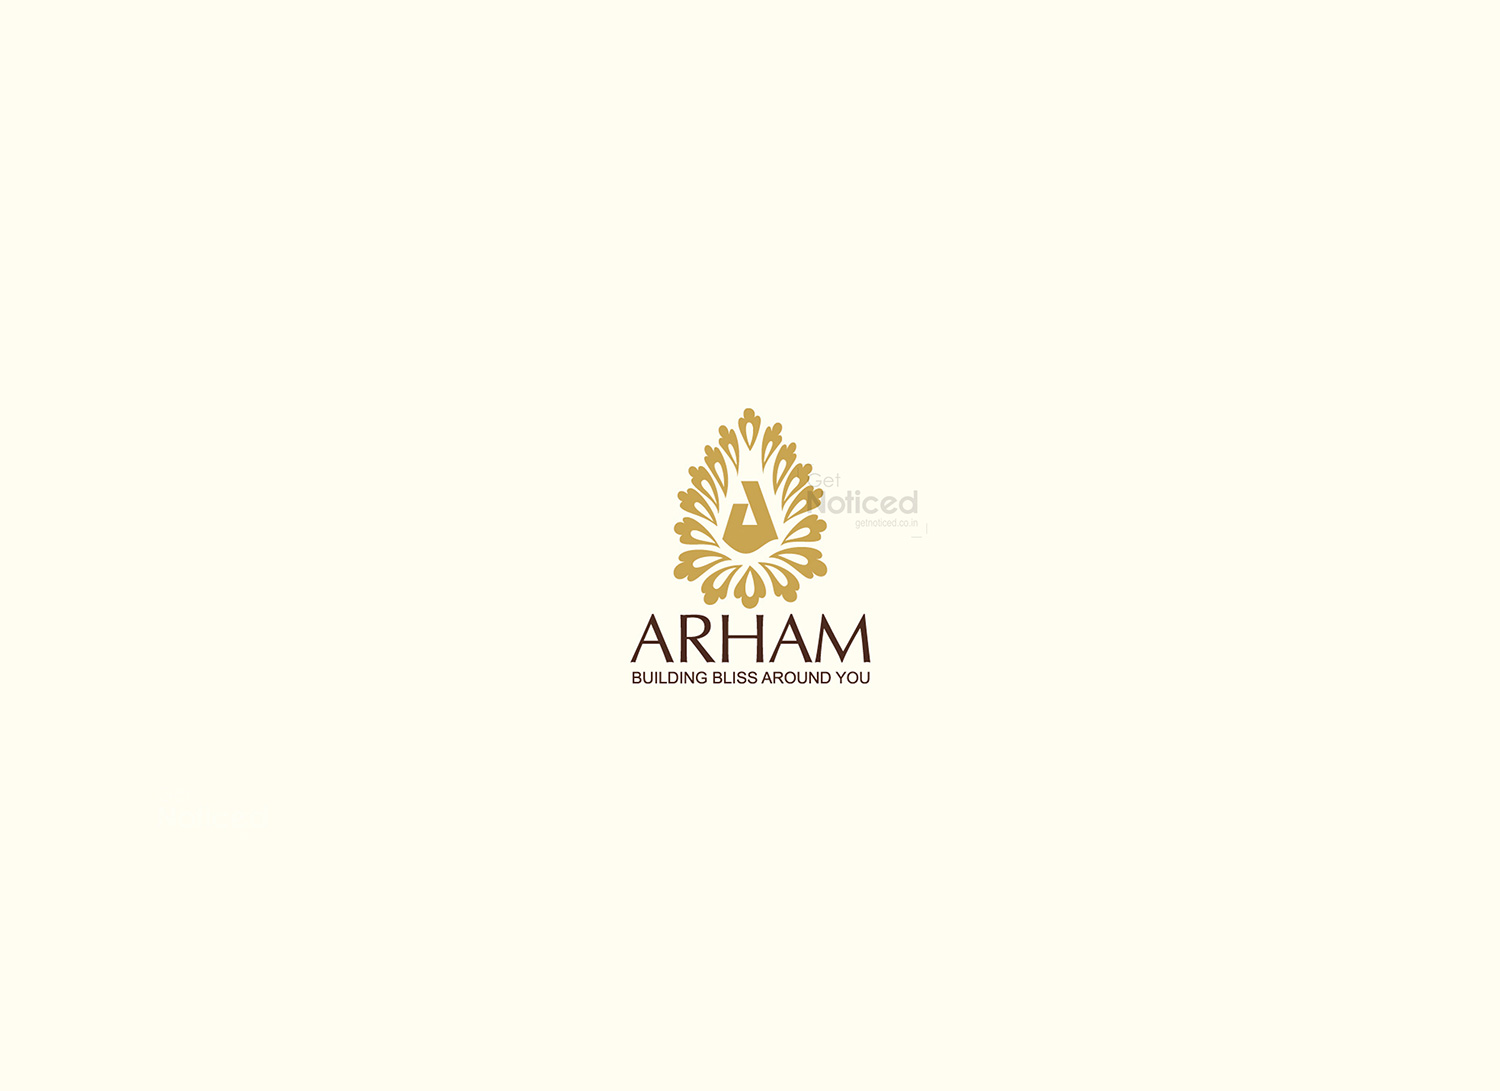 Arham Builders Logo Design